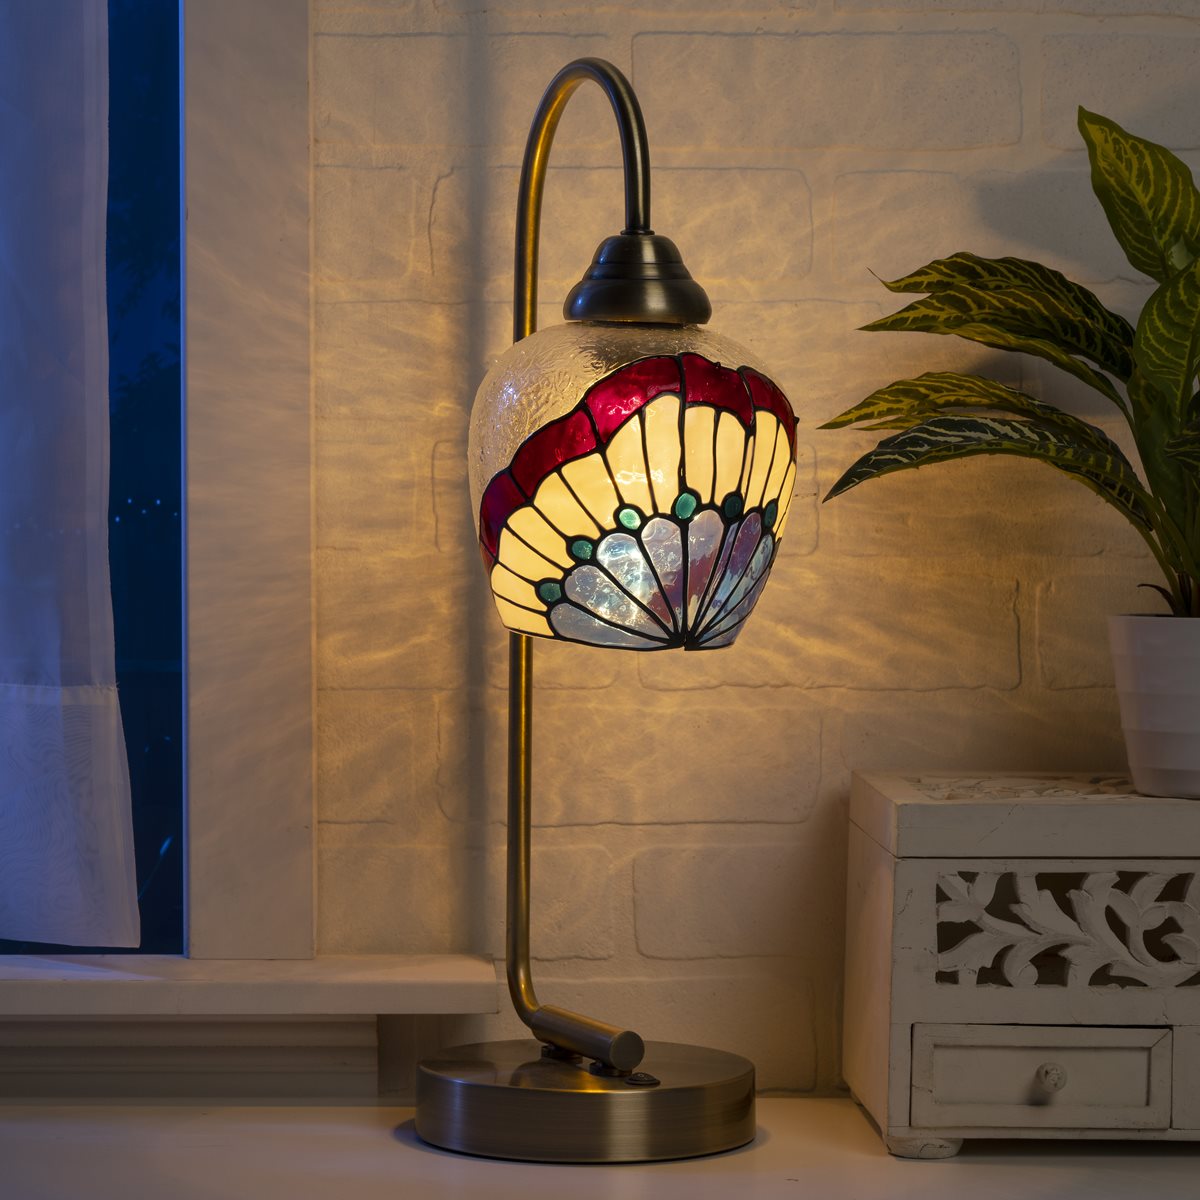 Gold Desk Lamp with Vintage Fan Design